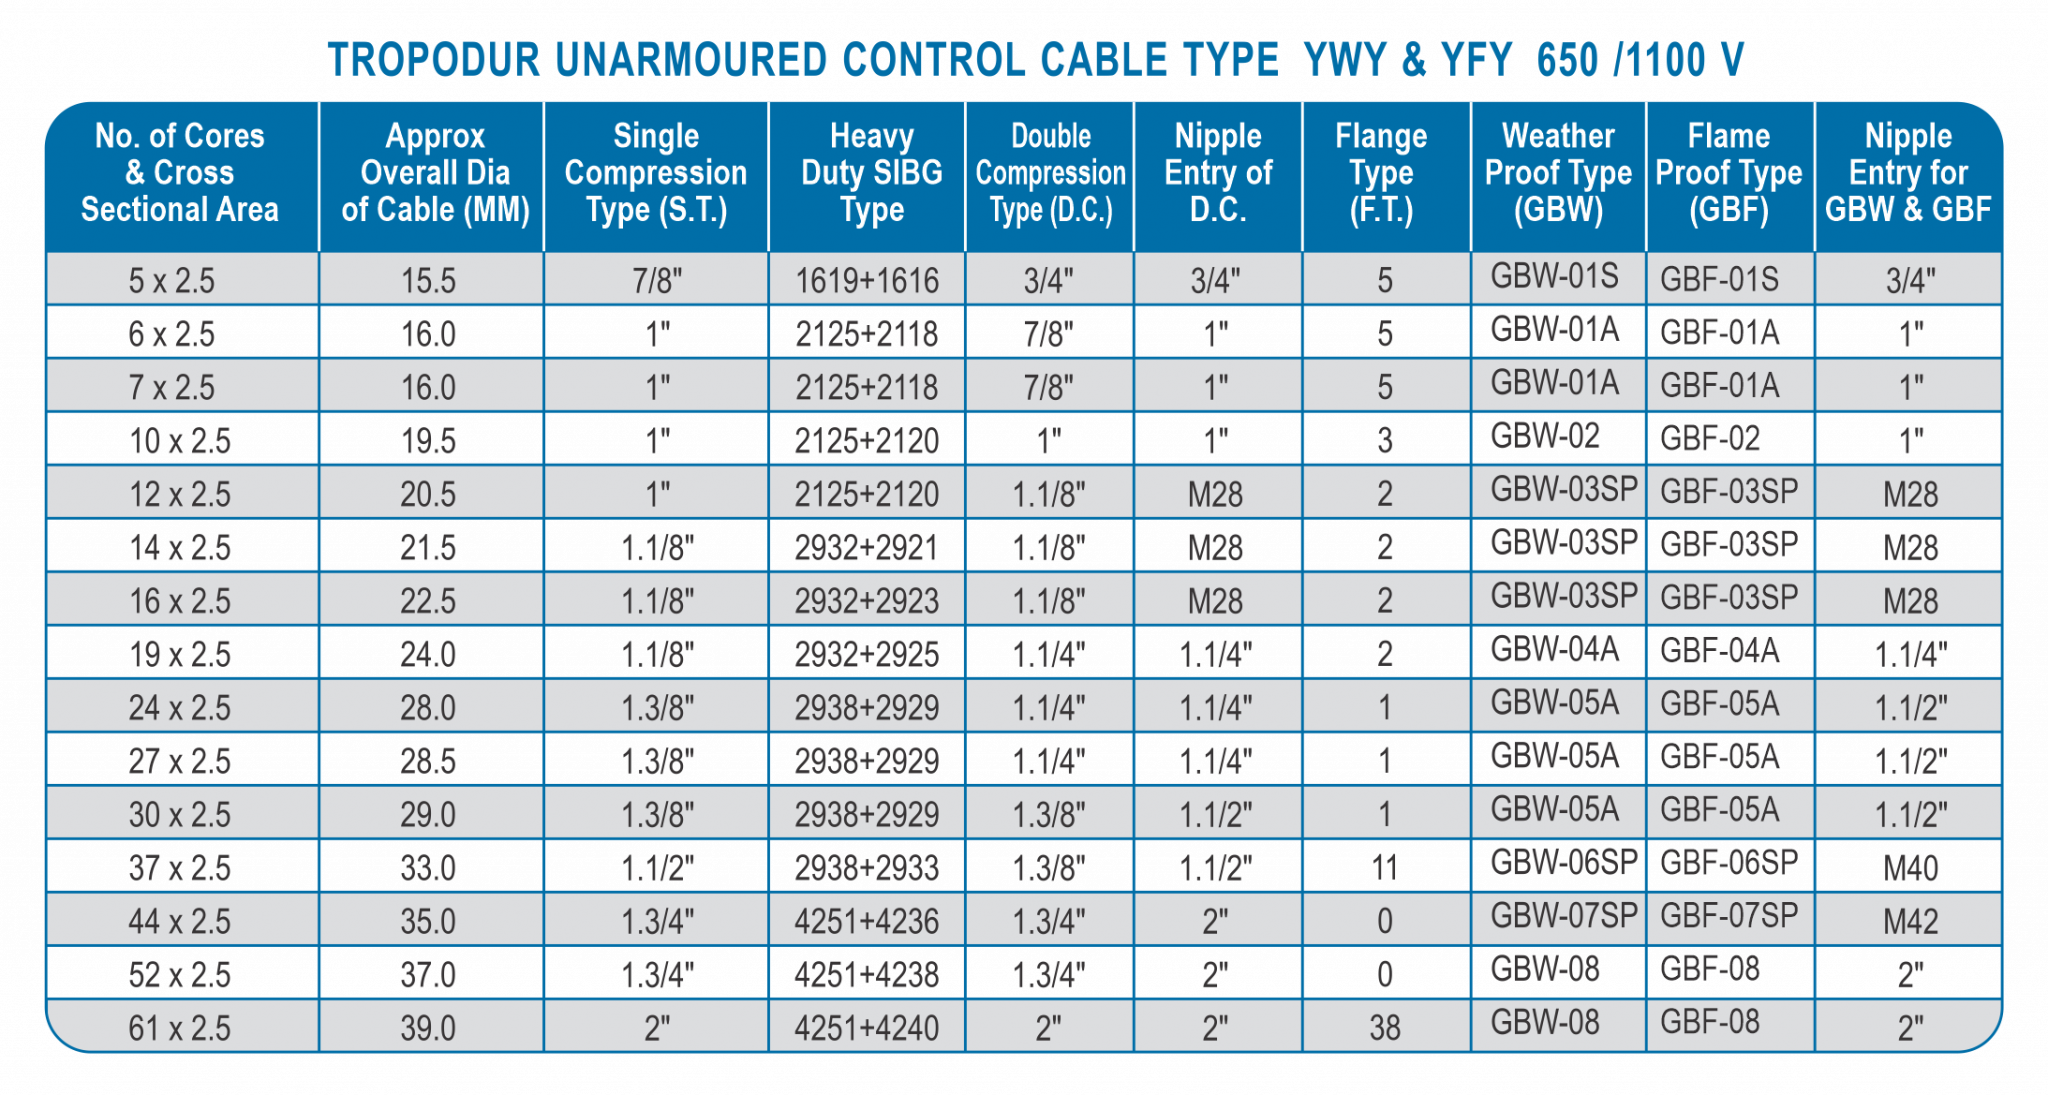 TROPODUR UNARMOURED CONTROL CABLE TYPE YWY & YFY 650/1100V - Global ...